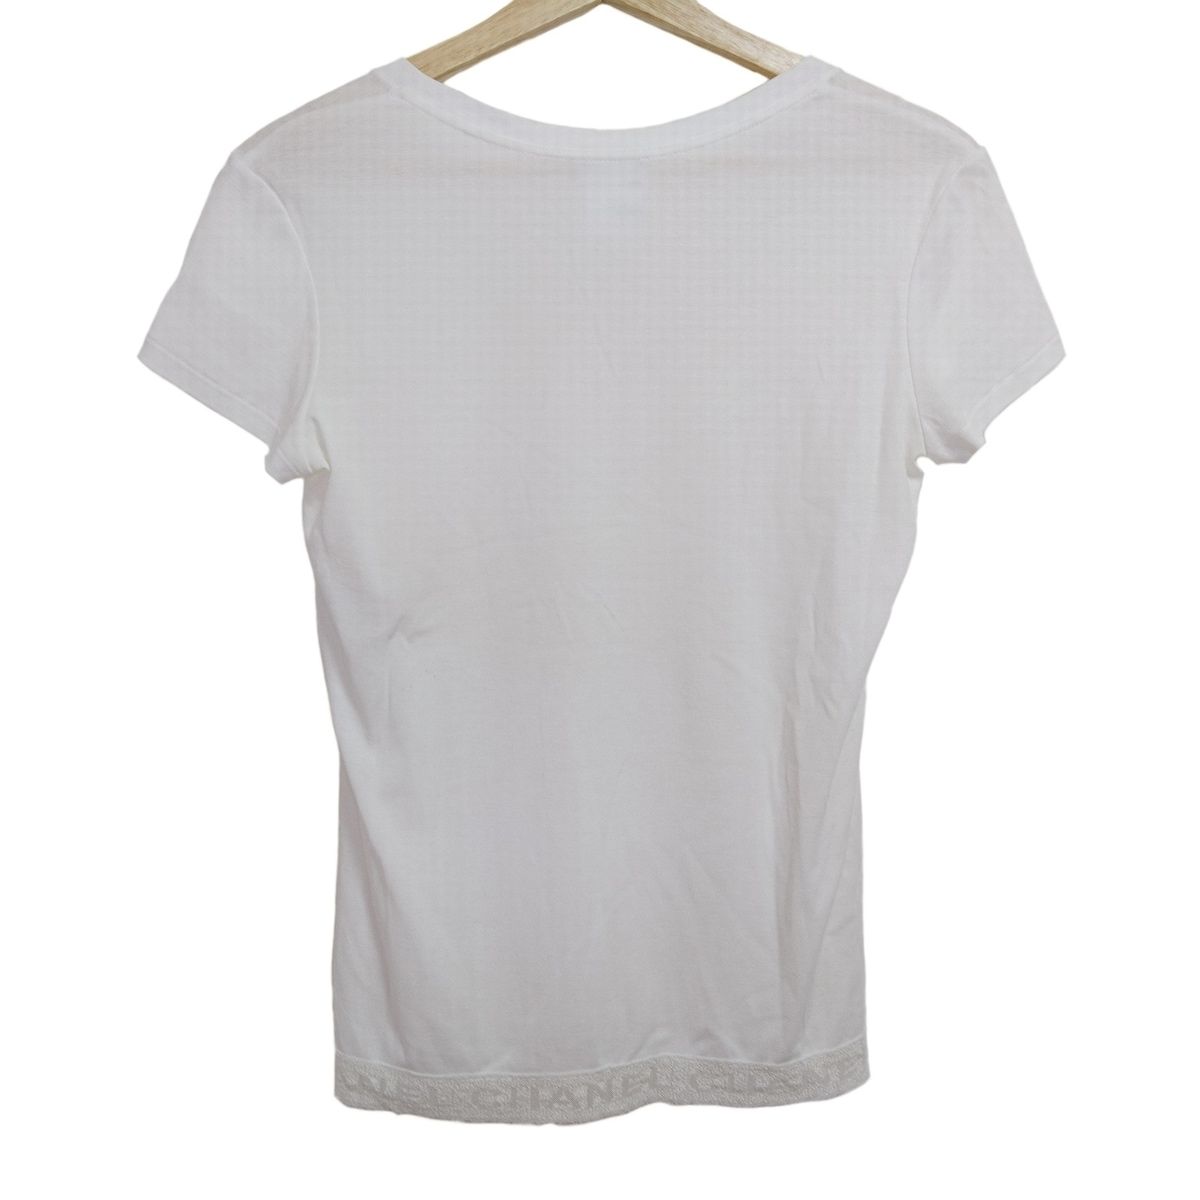 CHANEL(シャネル) 半袖Tシャツ サイズ36 S レディース - P41322 白 V ...